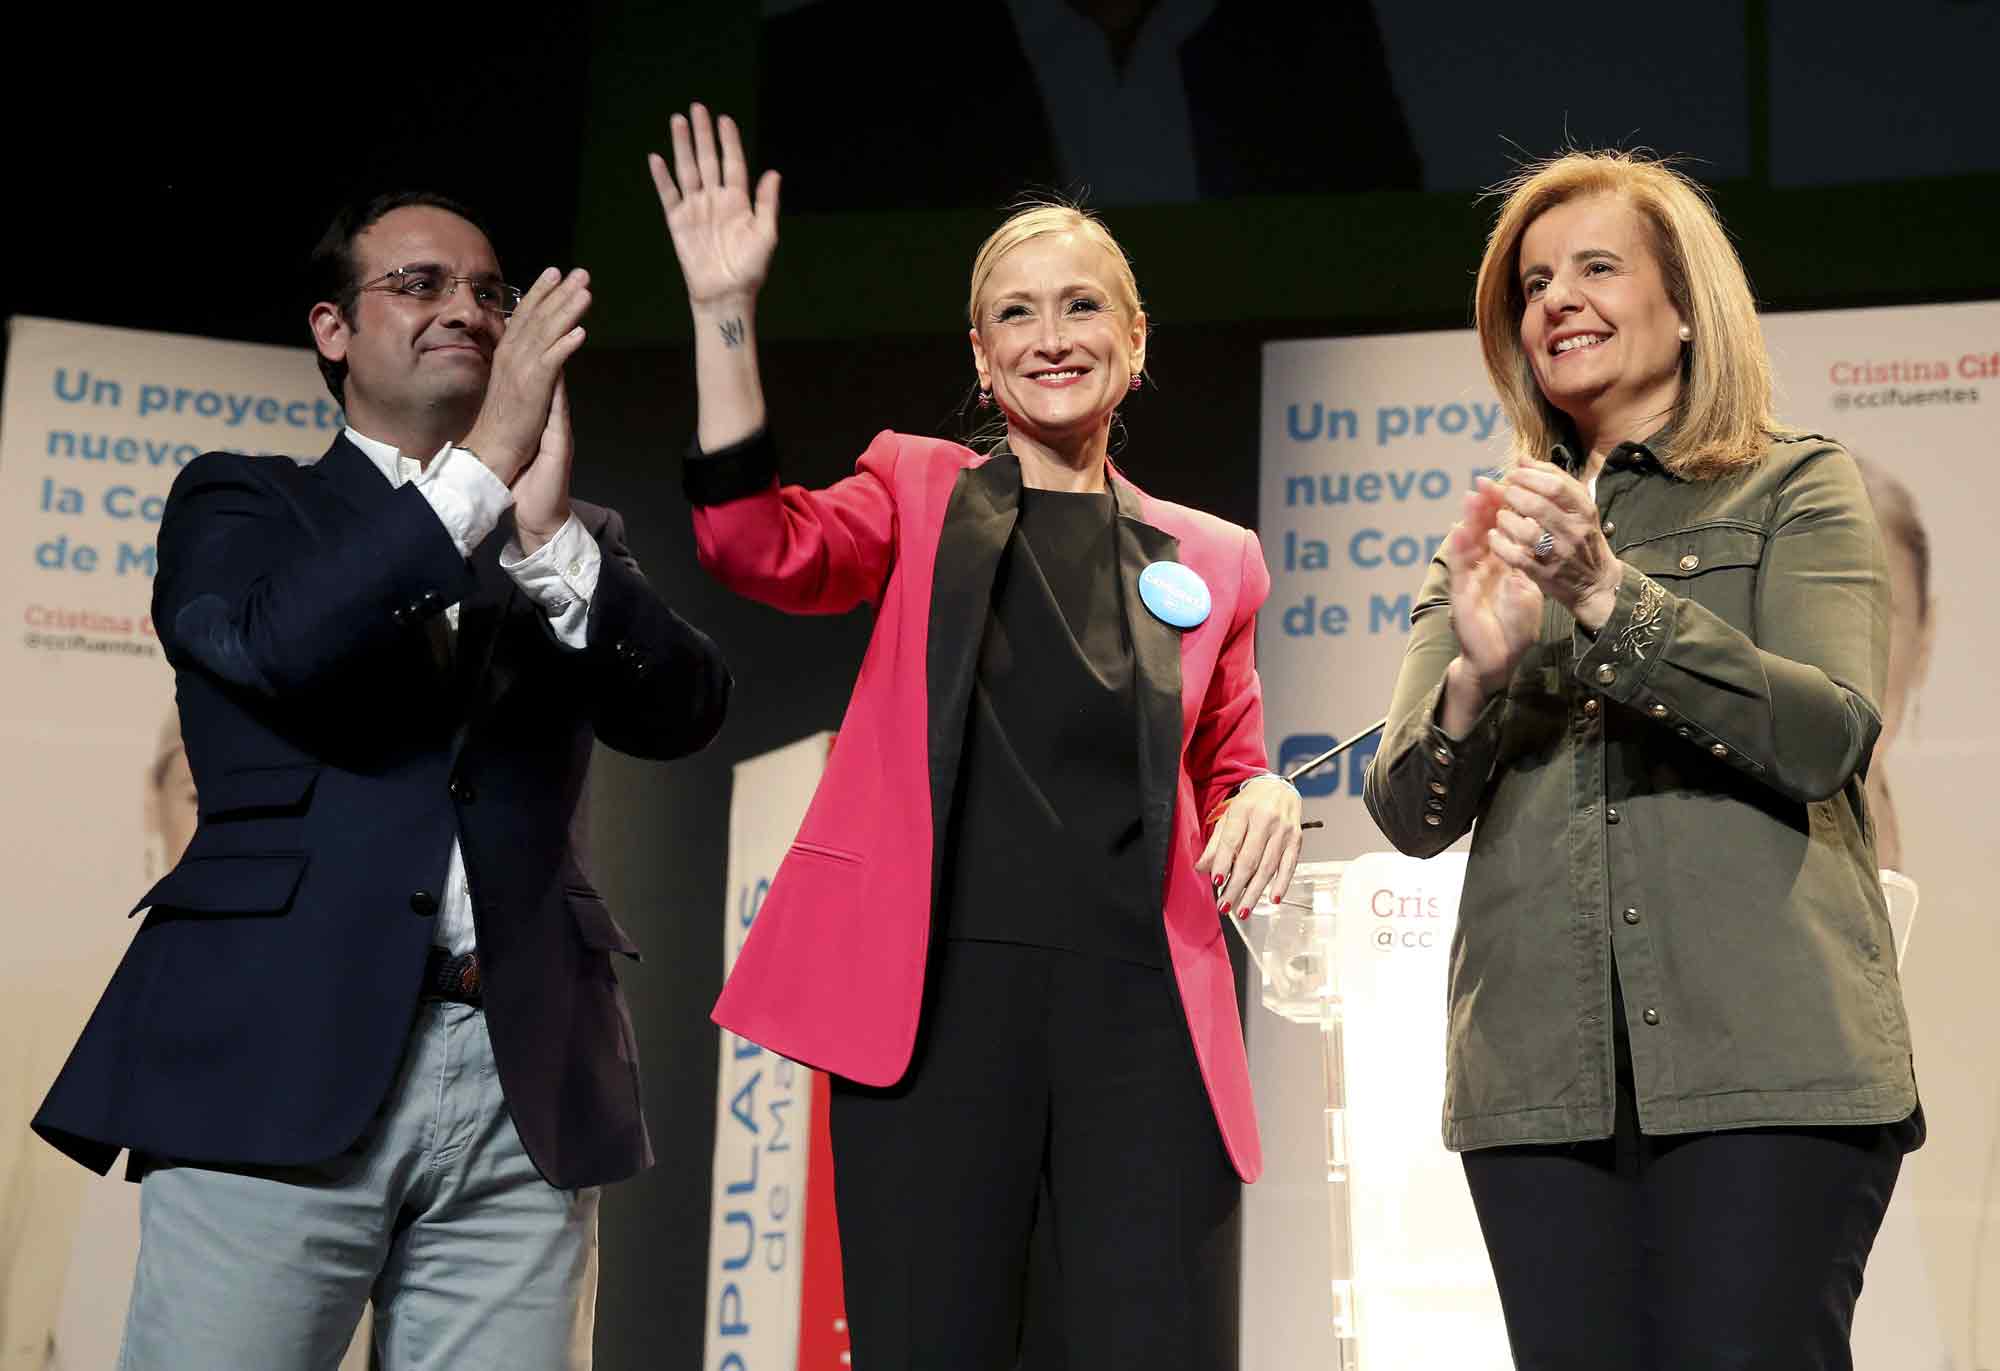 Cristina Cifuentes (c), candidata a la presidencia de la Comunidad de Madrid, junto a la ministra de Empleo, Fátima Báñez (d), y Daniel Ortiz, diputado del PP en la Asamblea de Madrid (i).